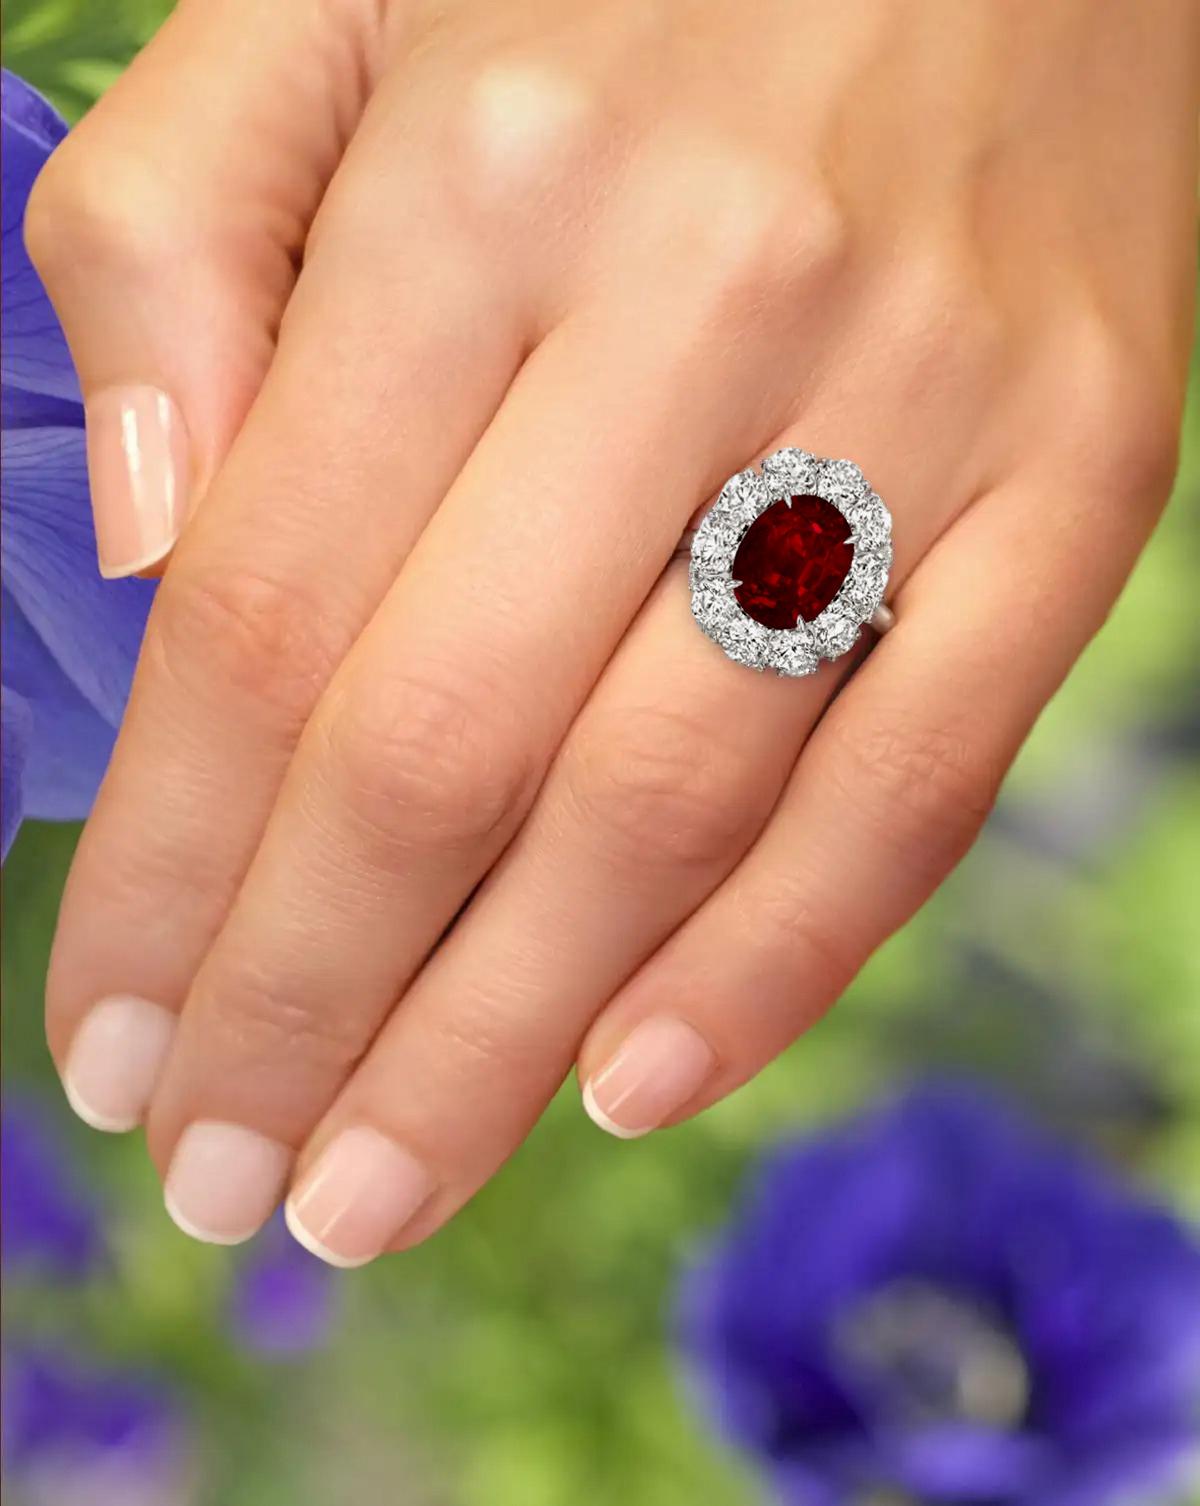 5 carat ruby ring